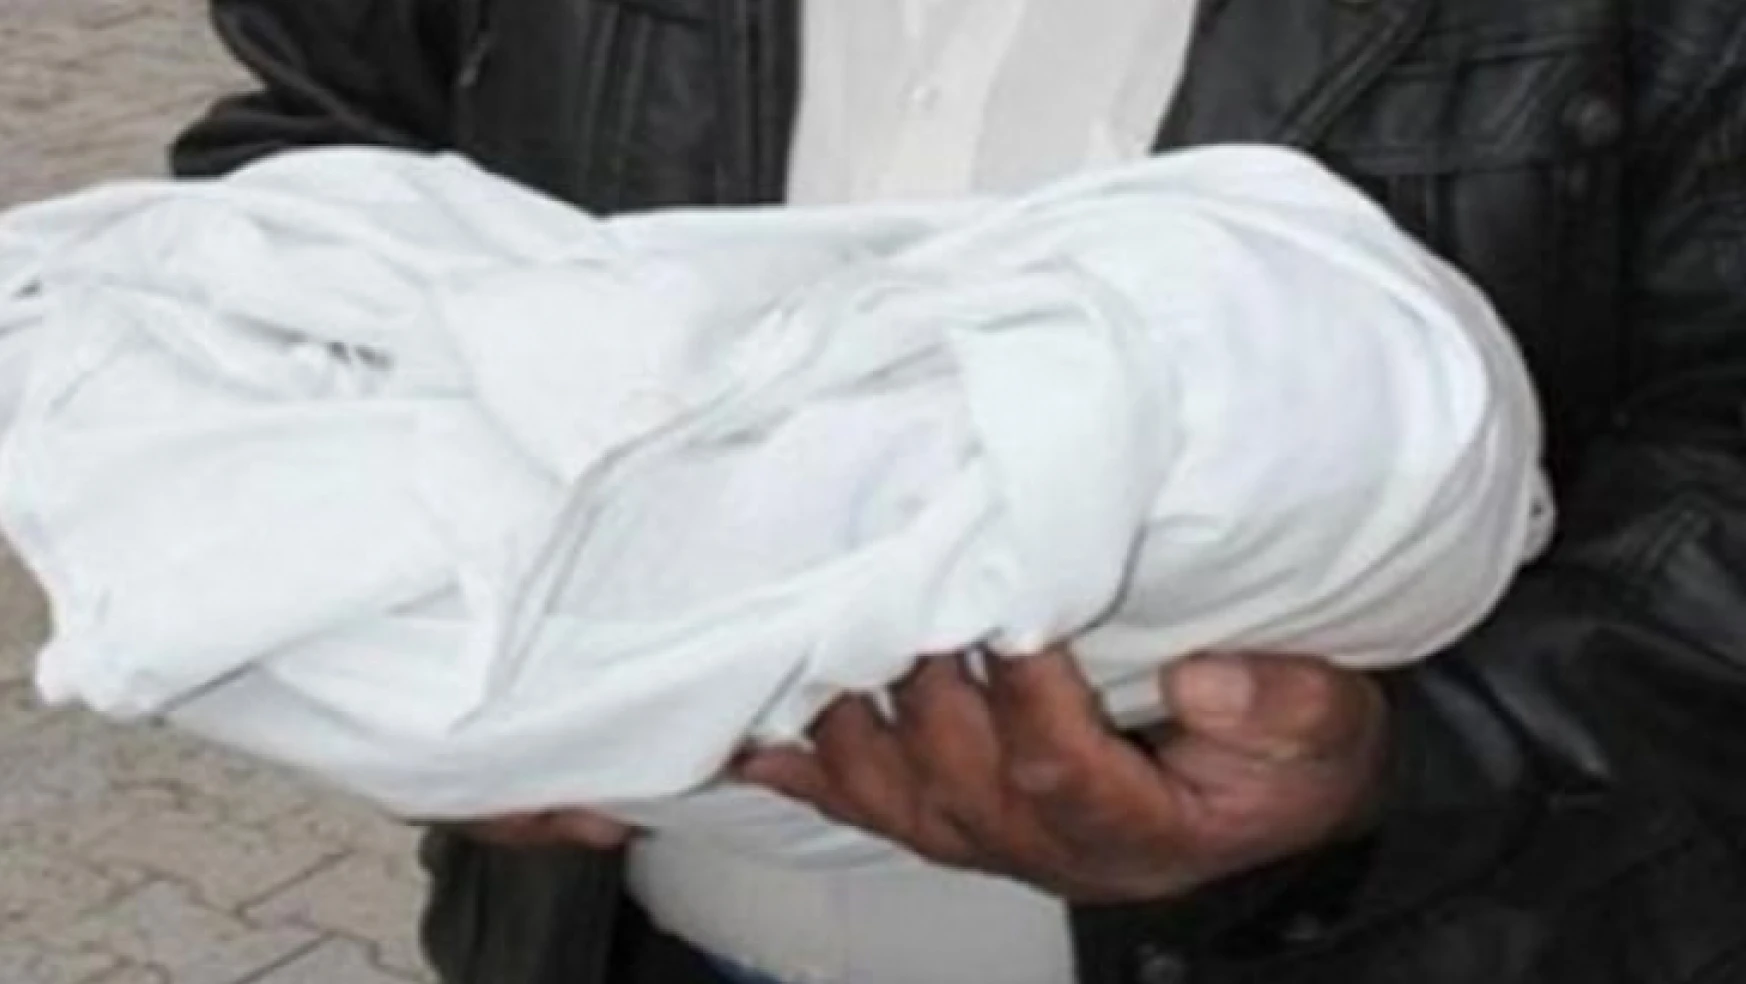 Malatya'da Bebek Ölüm Hızı Geçen Yıla Göre Arttı